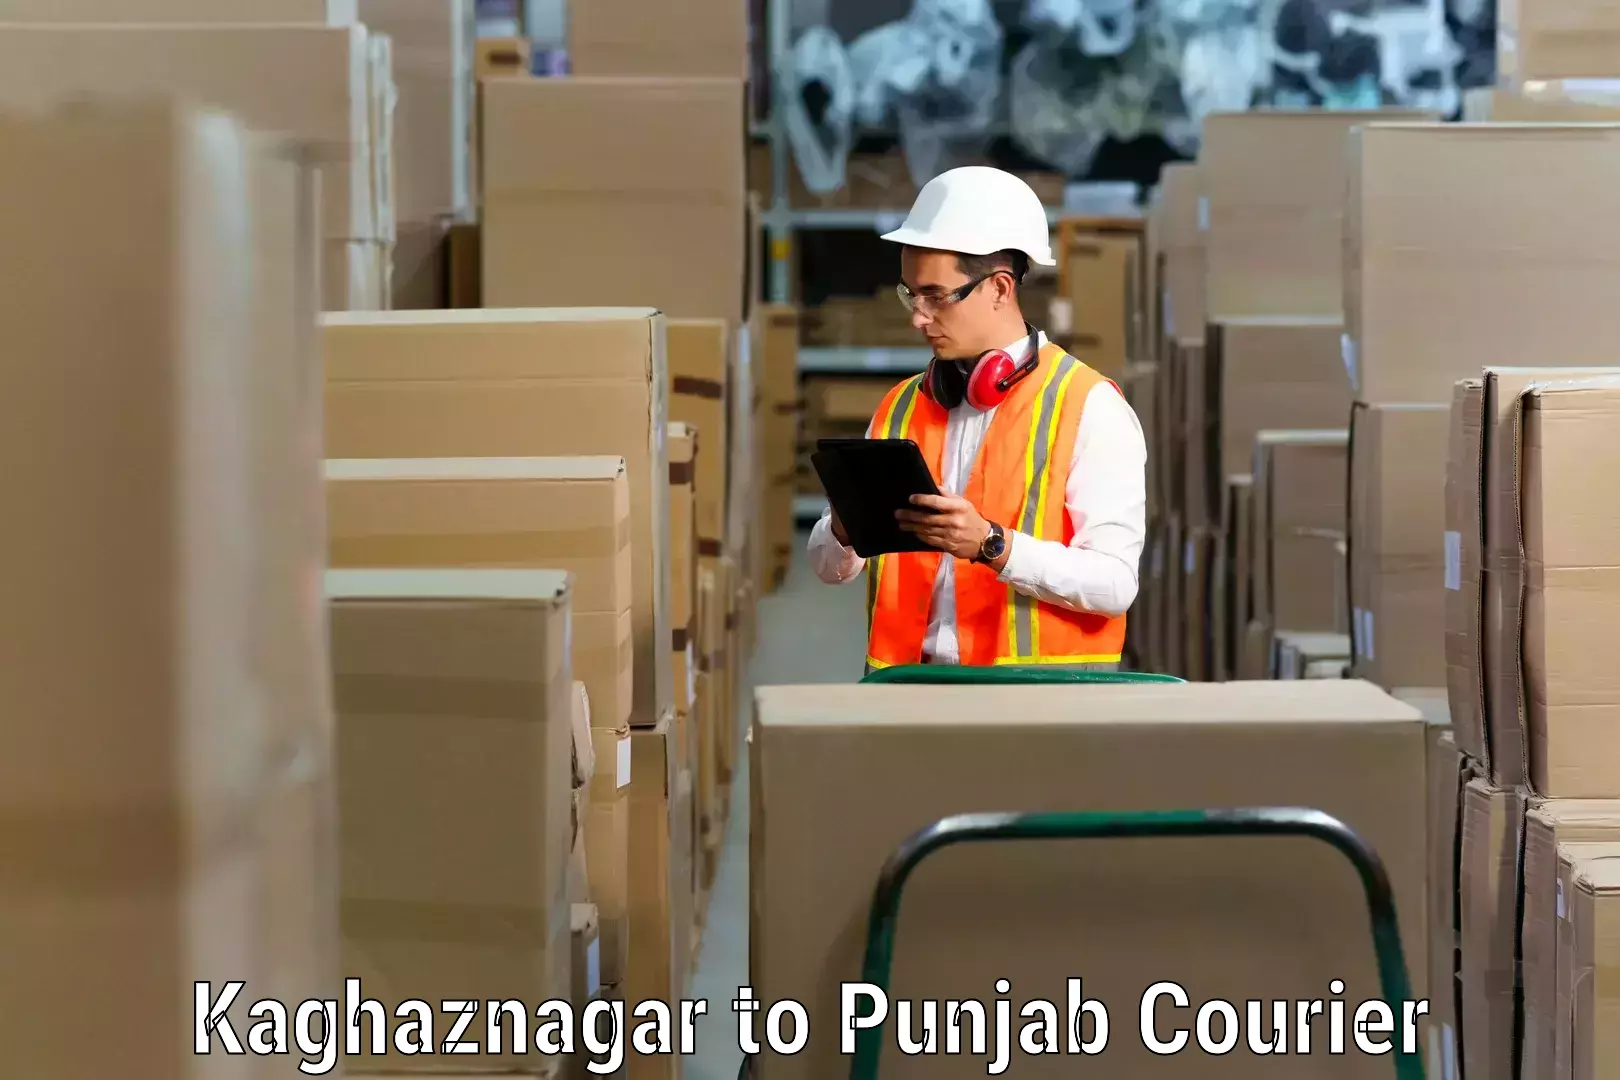 Home moving experts Kaghaznagar to Punjab